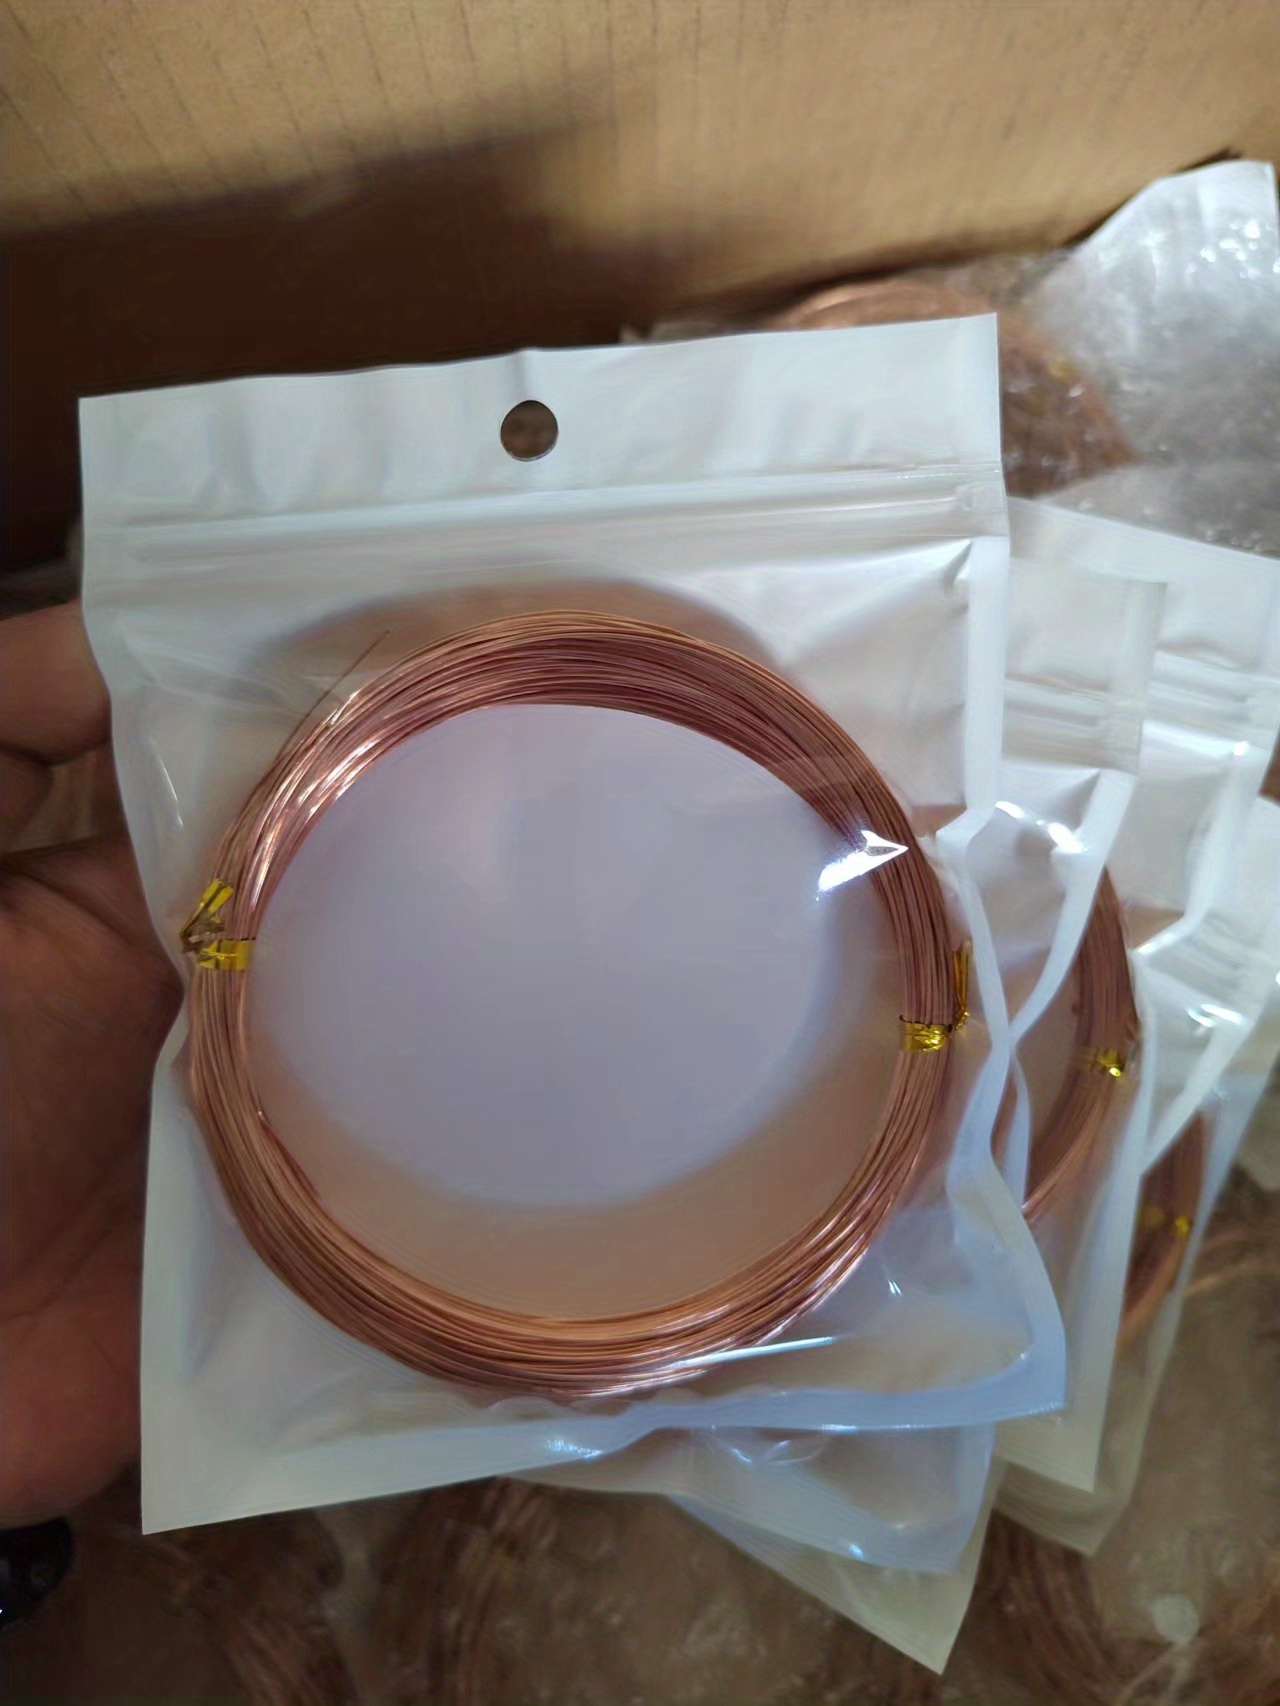 OYuYeaD 99.9% Soft Copper Wire 18 Gauge / 1 MM Diameter /131 Feet